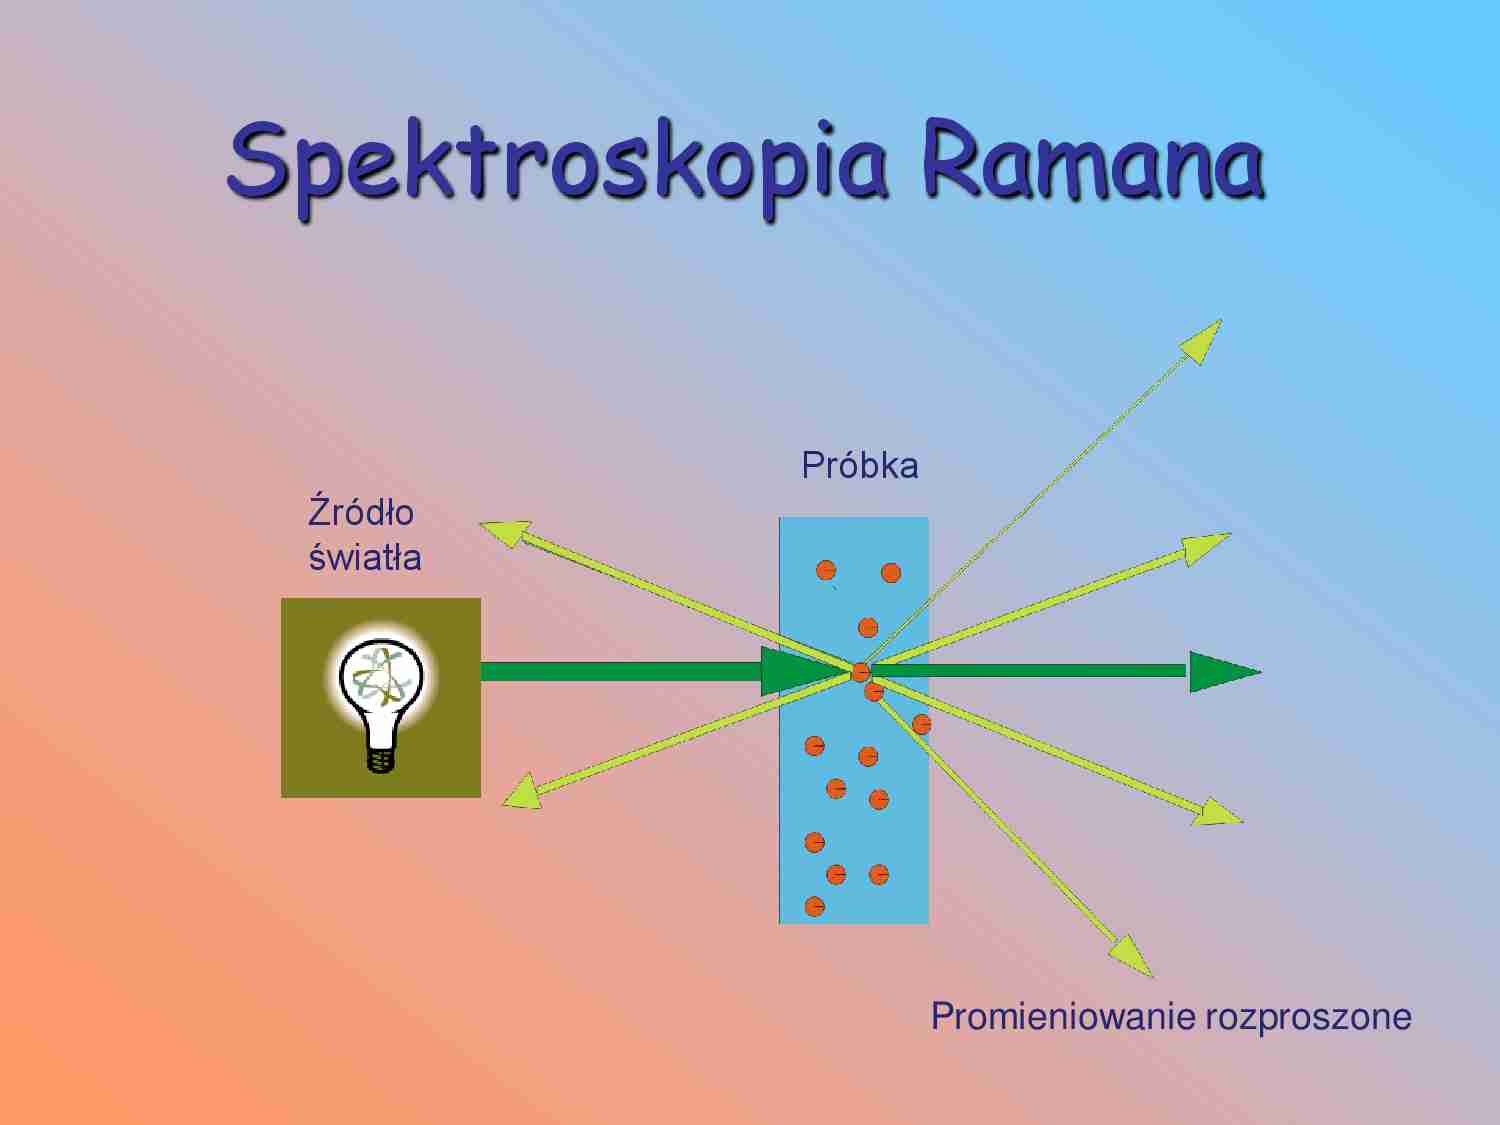 Spektroskopia Ramana - omówienie  - strona 1